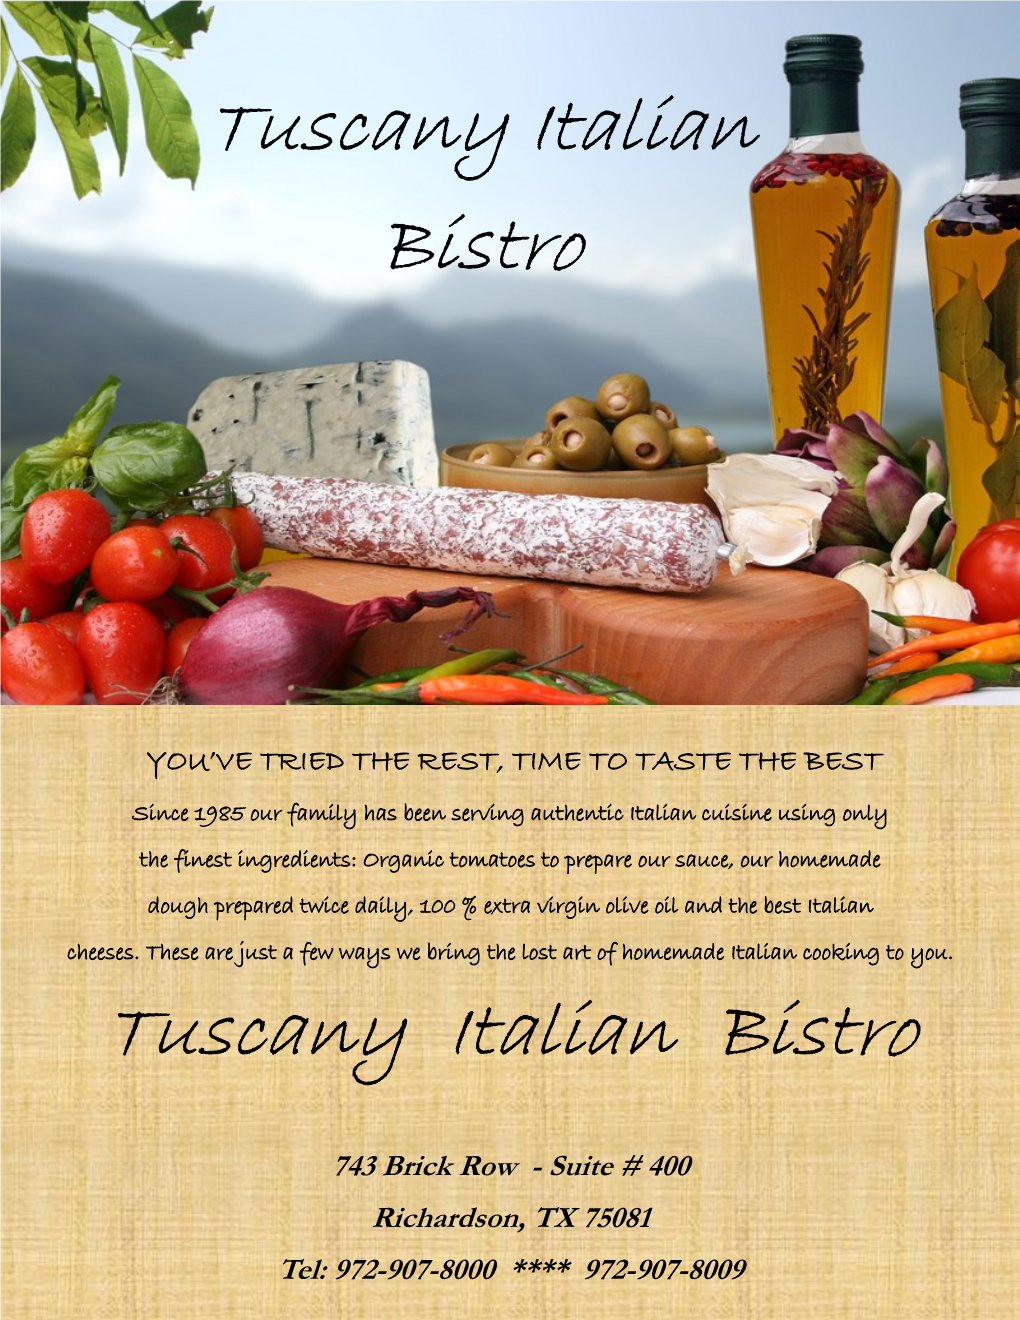 Tuscany Italian Bistro Tuscany Italian Bistro